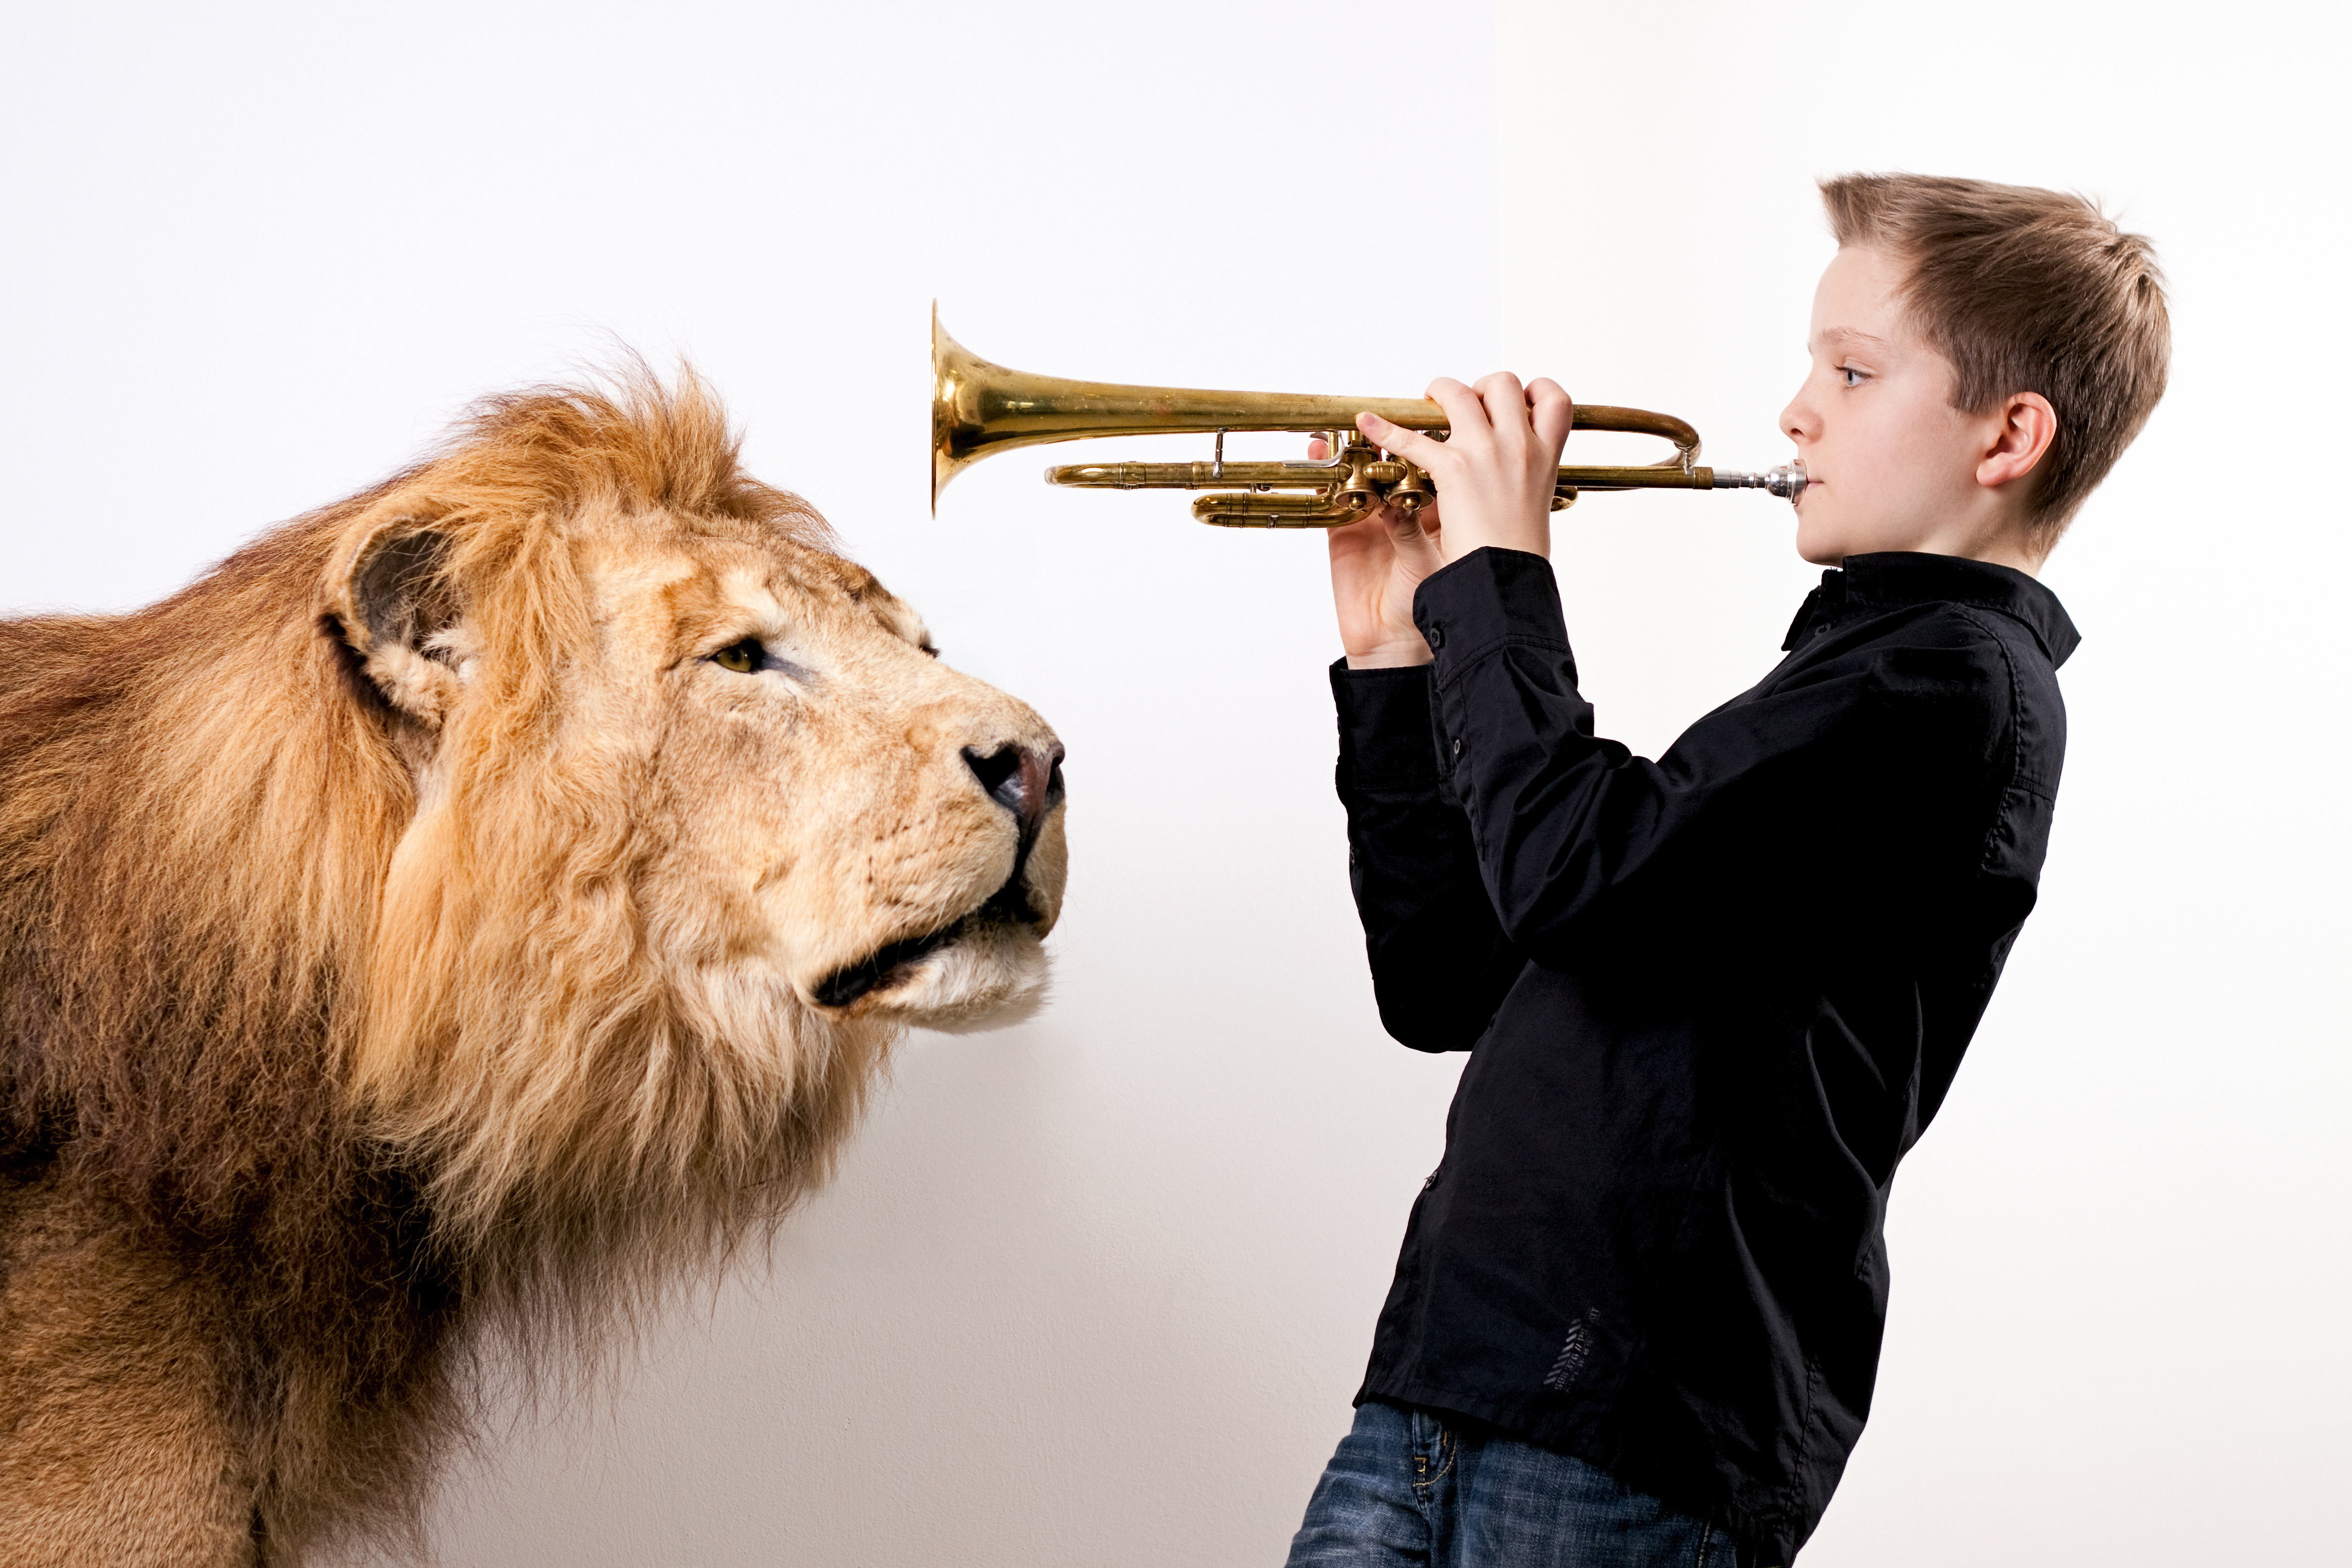 Junge mit Trompete vor einer Plakatwand mit einem lebensgroßen Löwen